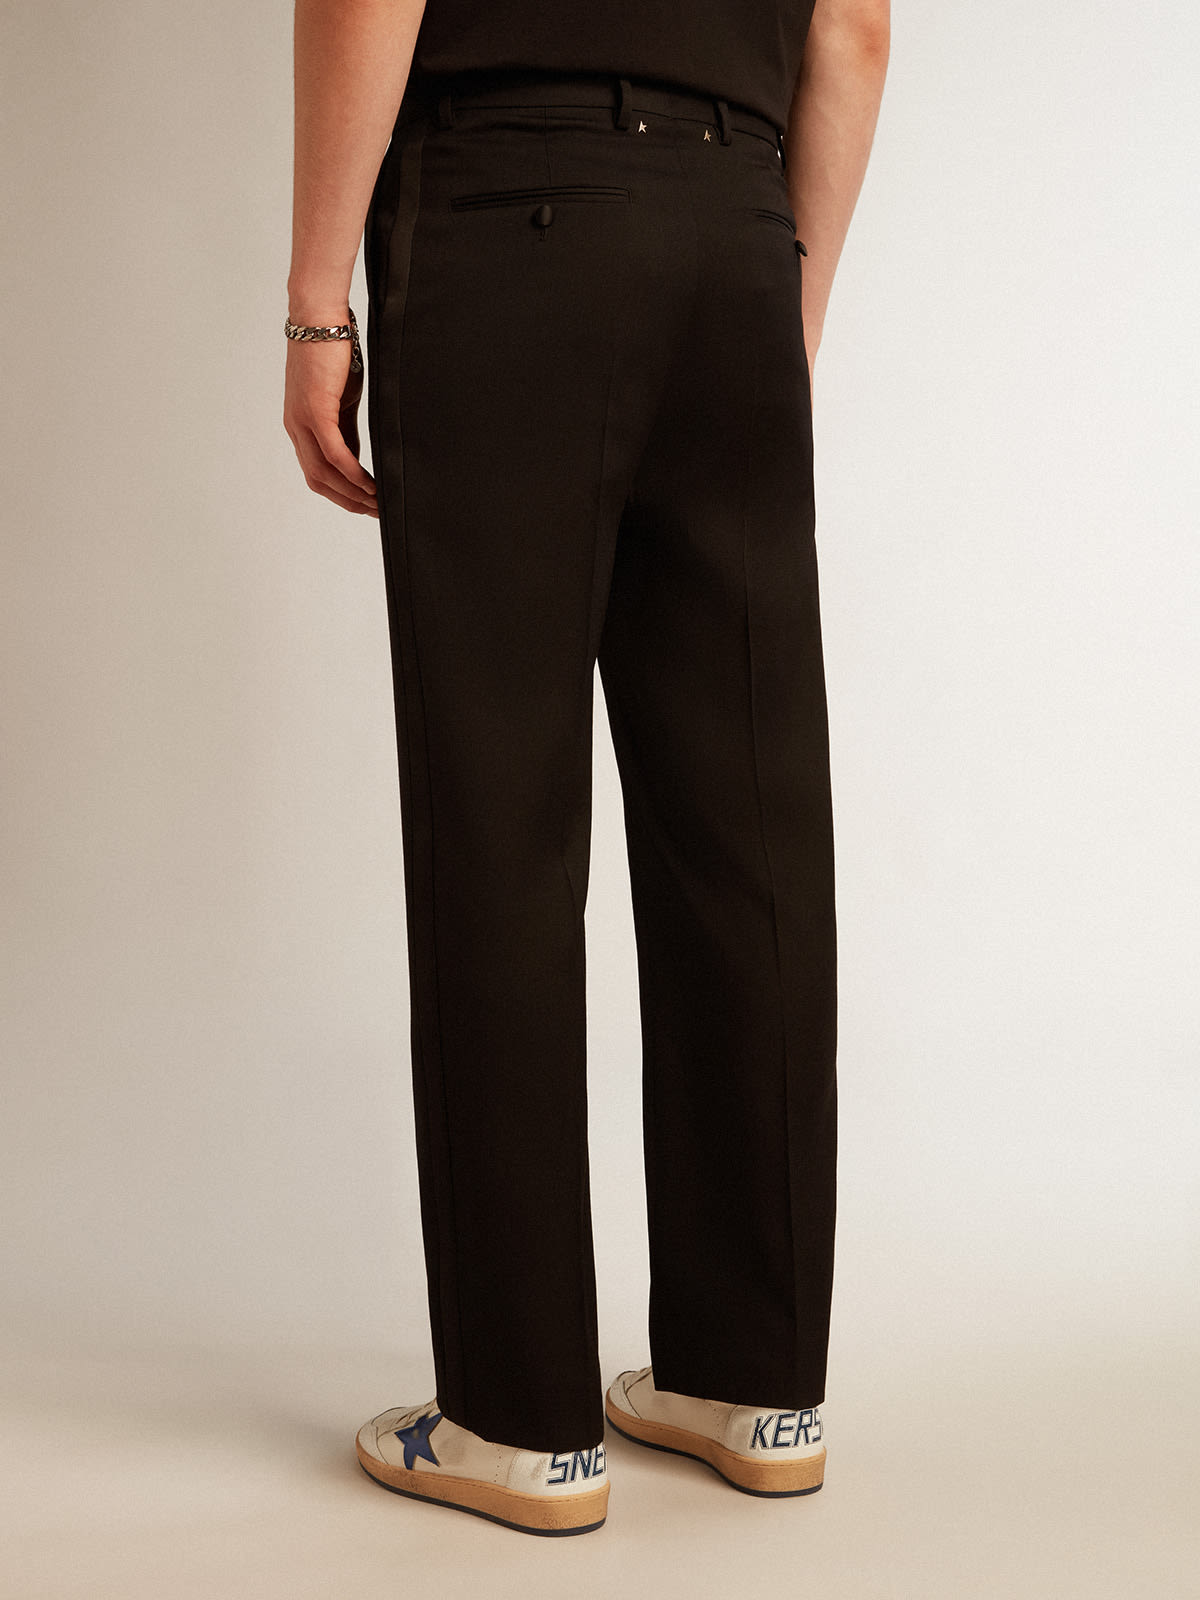 Golden Goose - Pantalón de esmoquin de hombre en gabardina de lana color negro in 